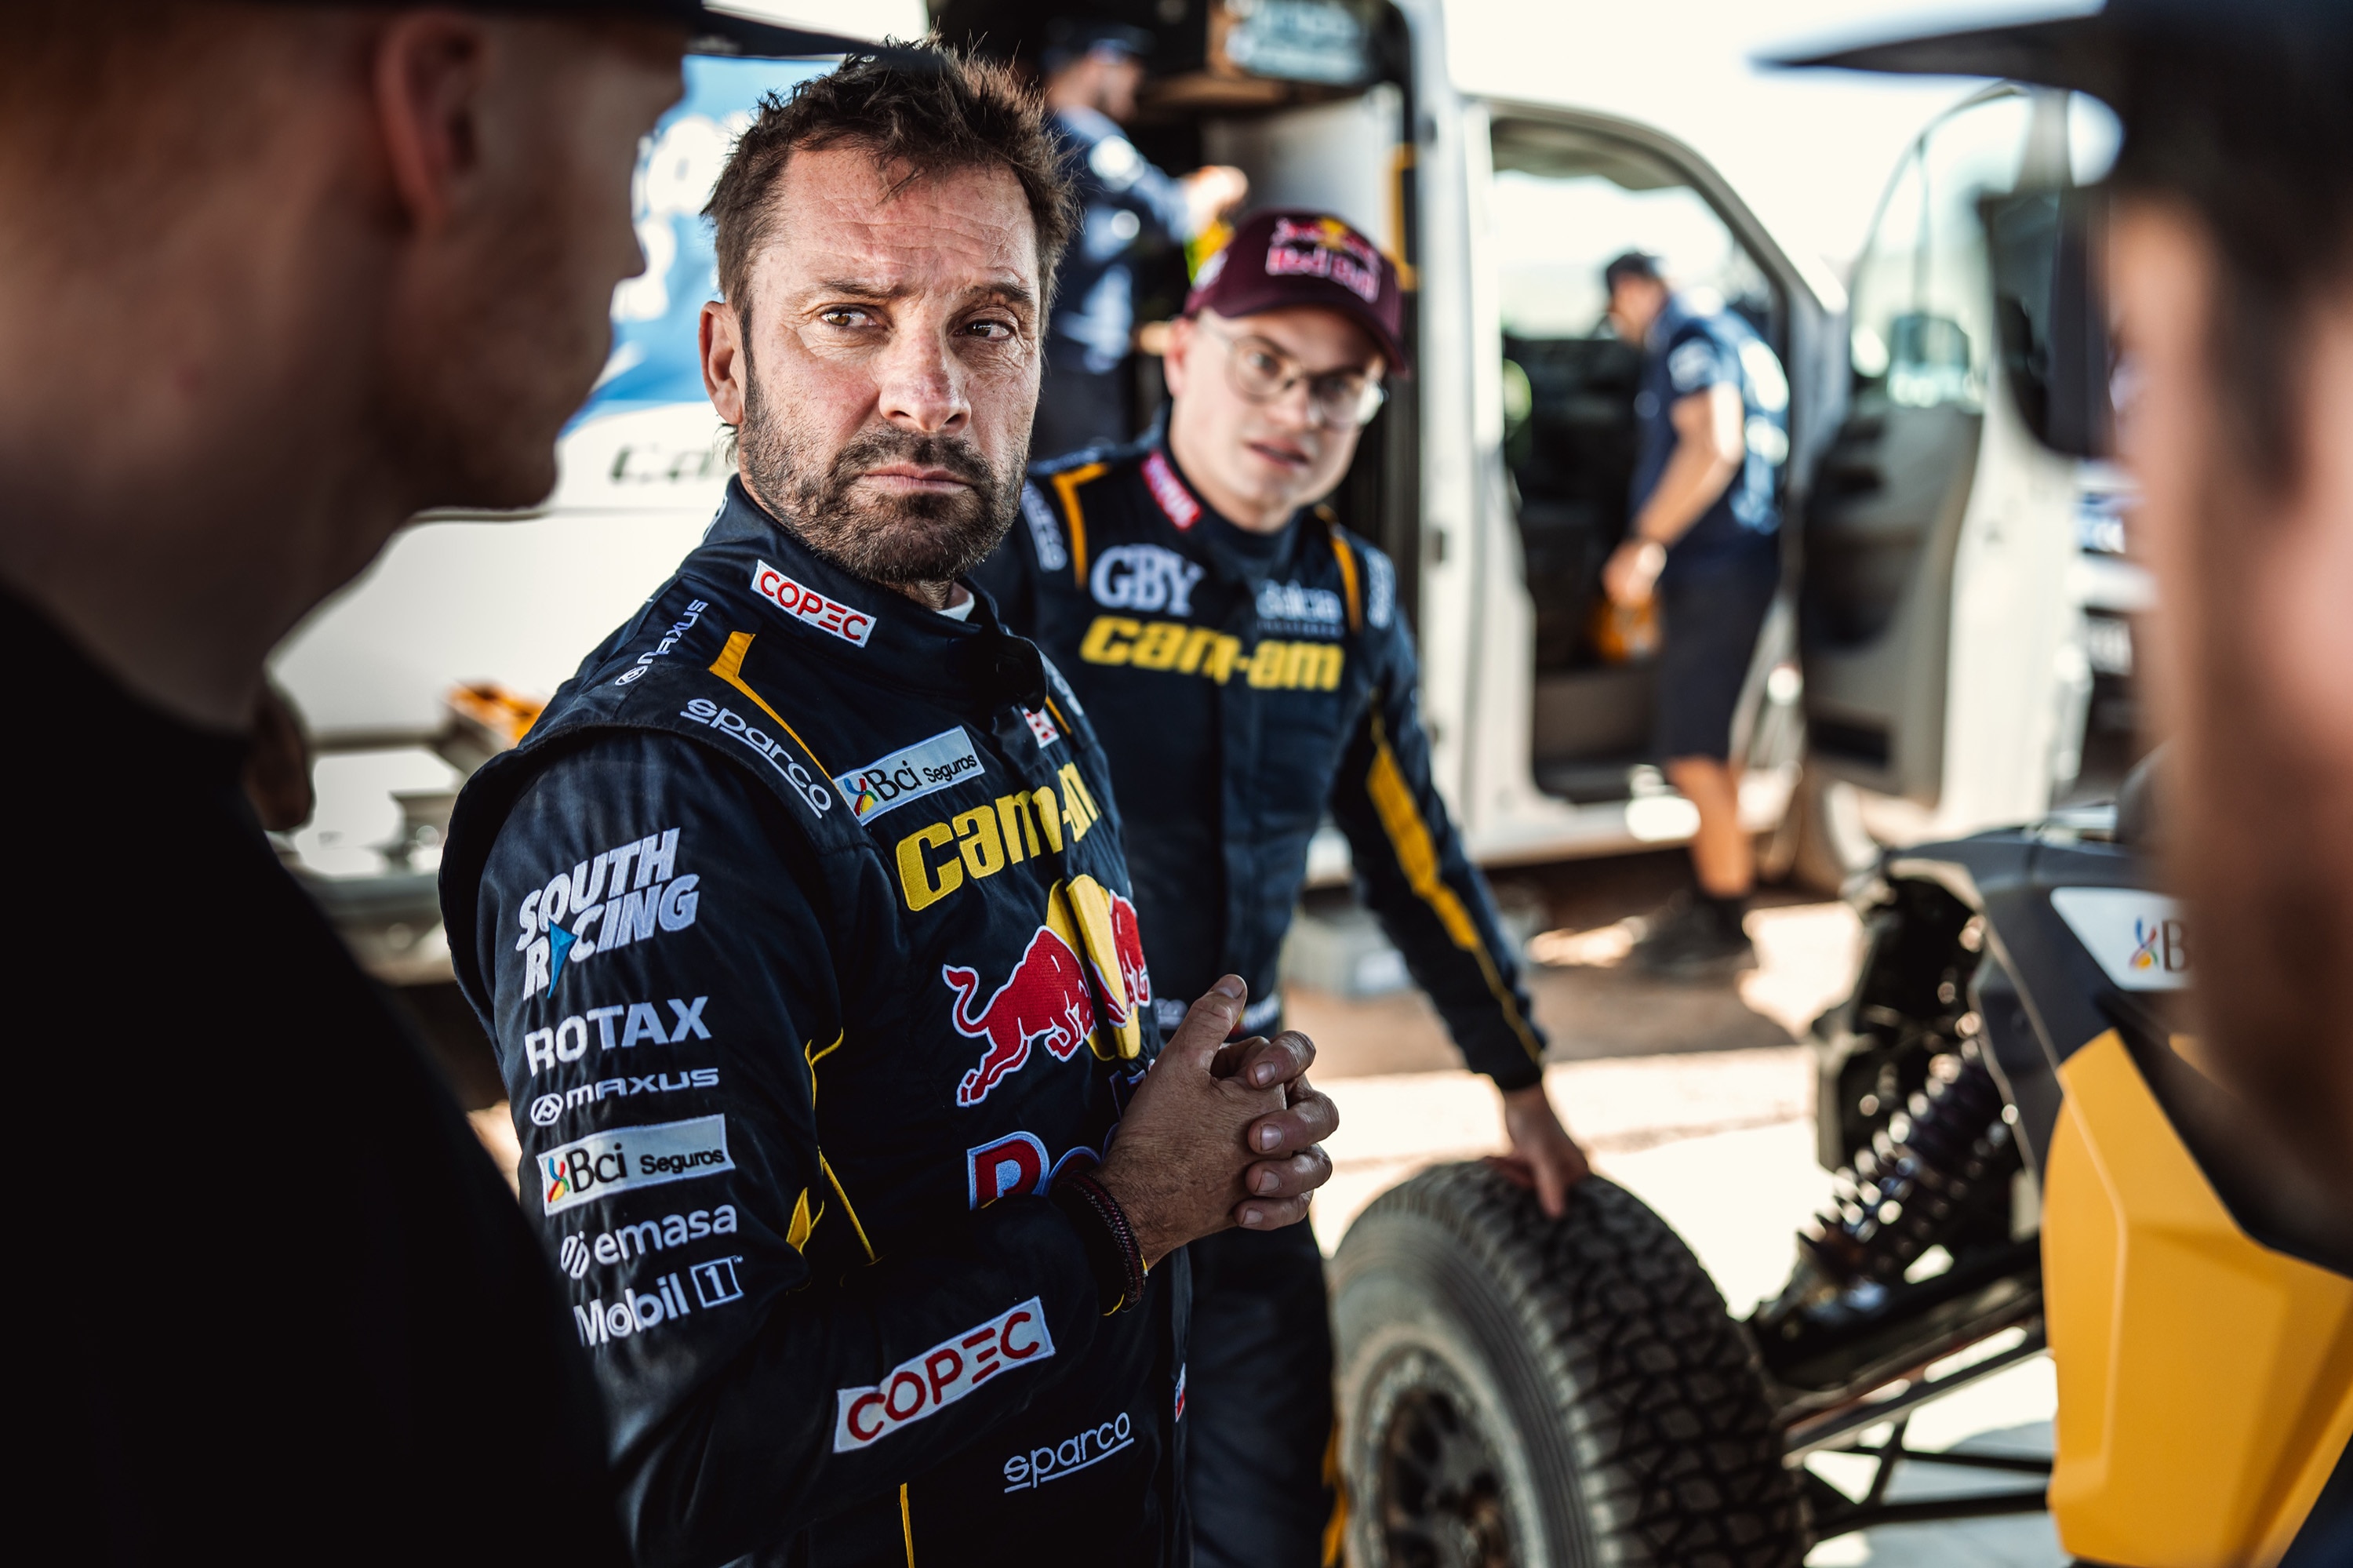 Chaleco Lopez bereitet sich auf die Rallye Dakar vor